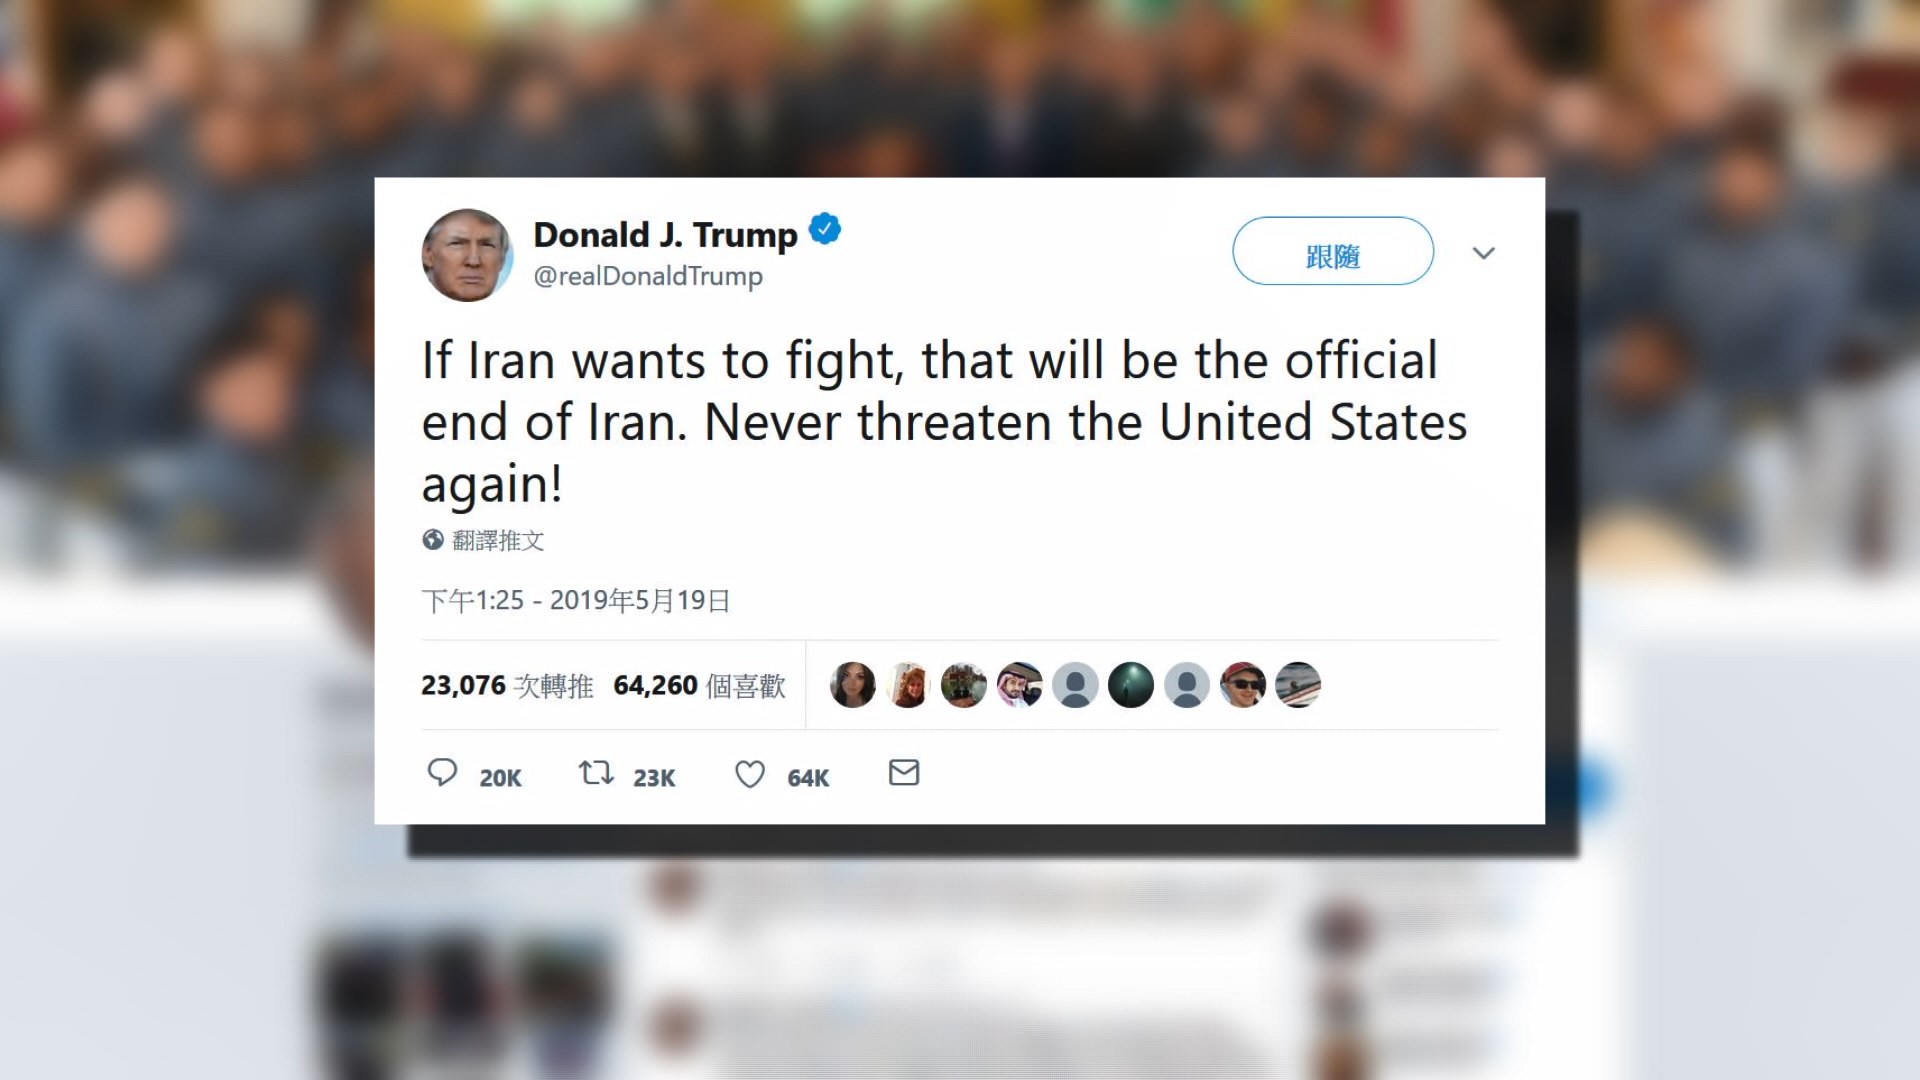 特朗普警告開戰將是伊朗正式終結